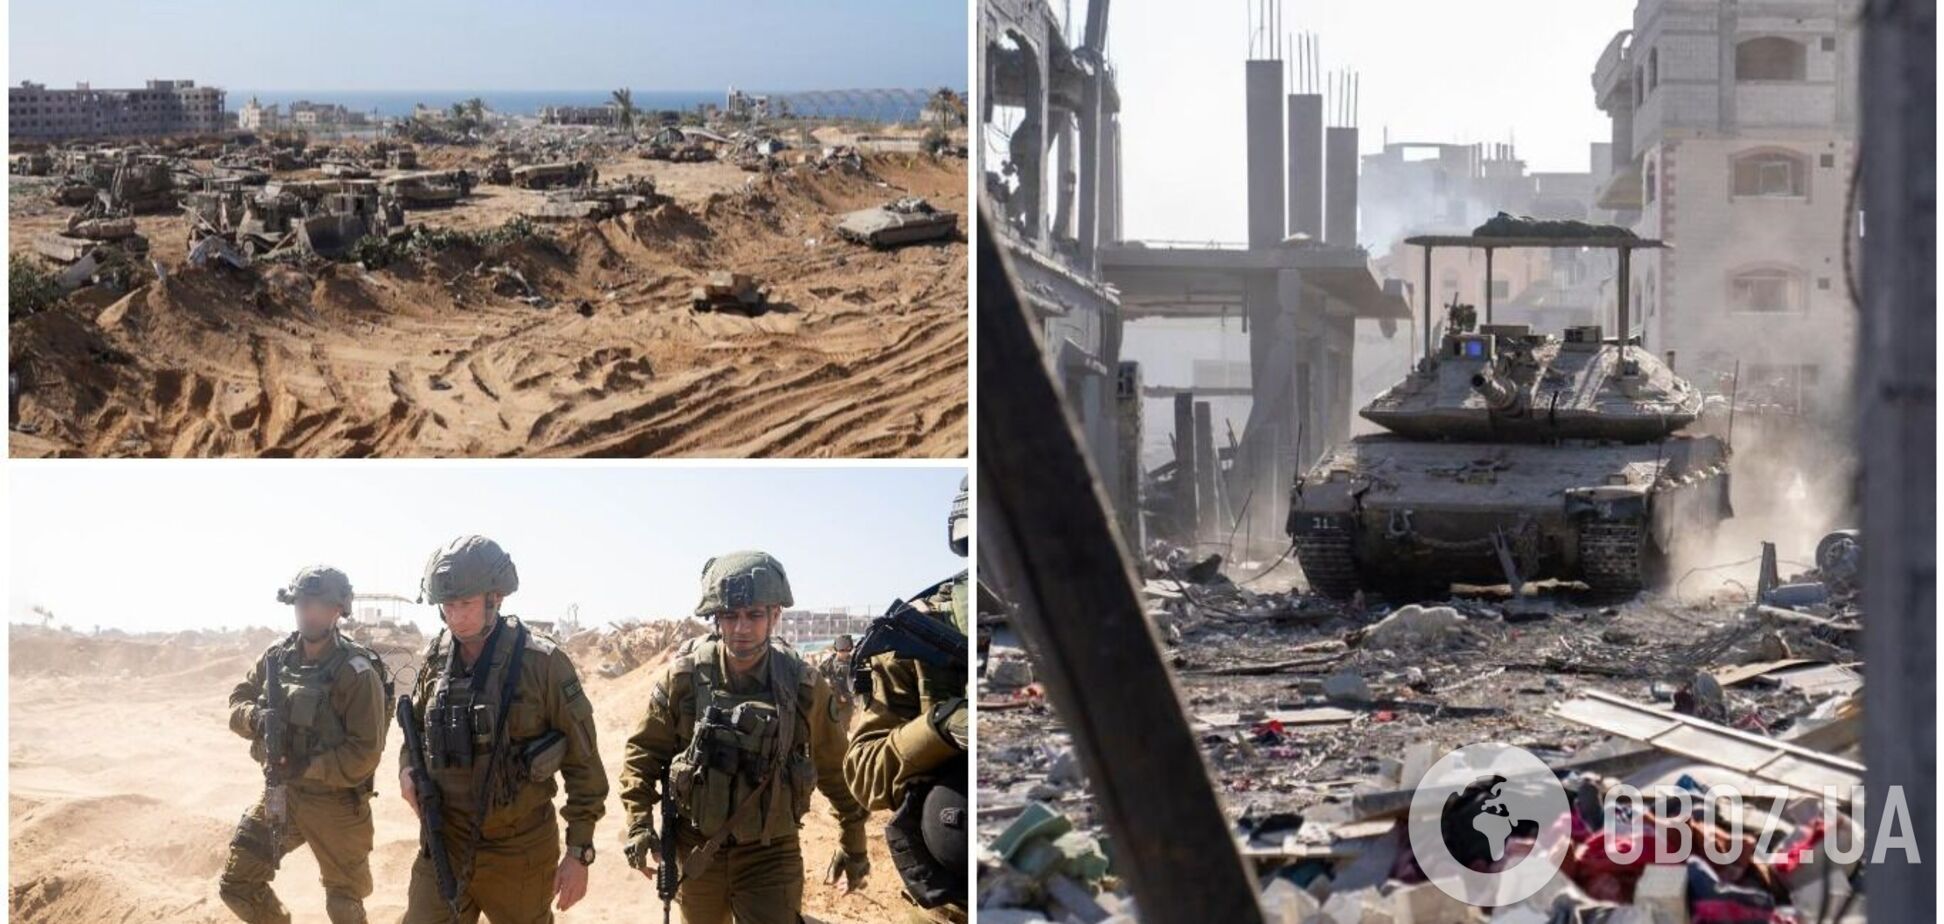 ЦАХАЛ заявил об уничтожении 130 туннелей ХАМАС в секторе Газа, в ООН обвинили обе стороны в военных преступлениях. Ключевые факты